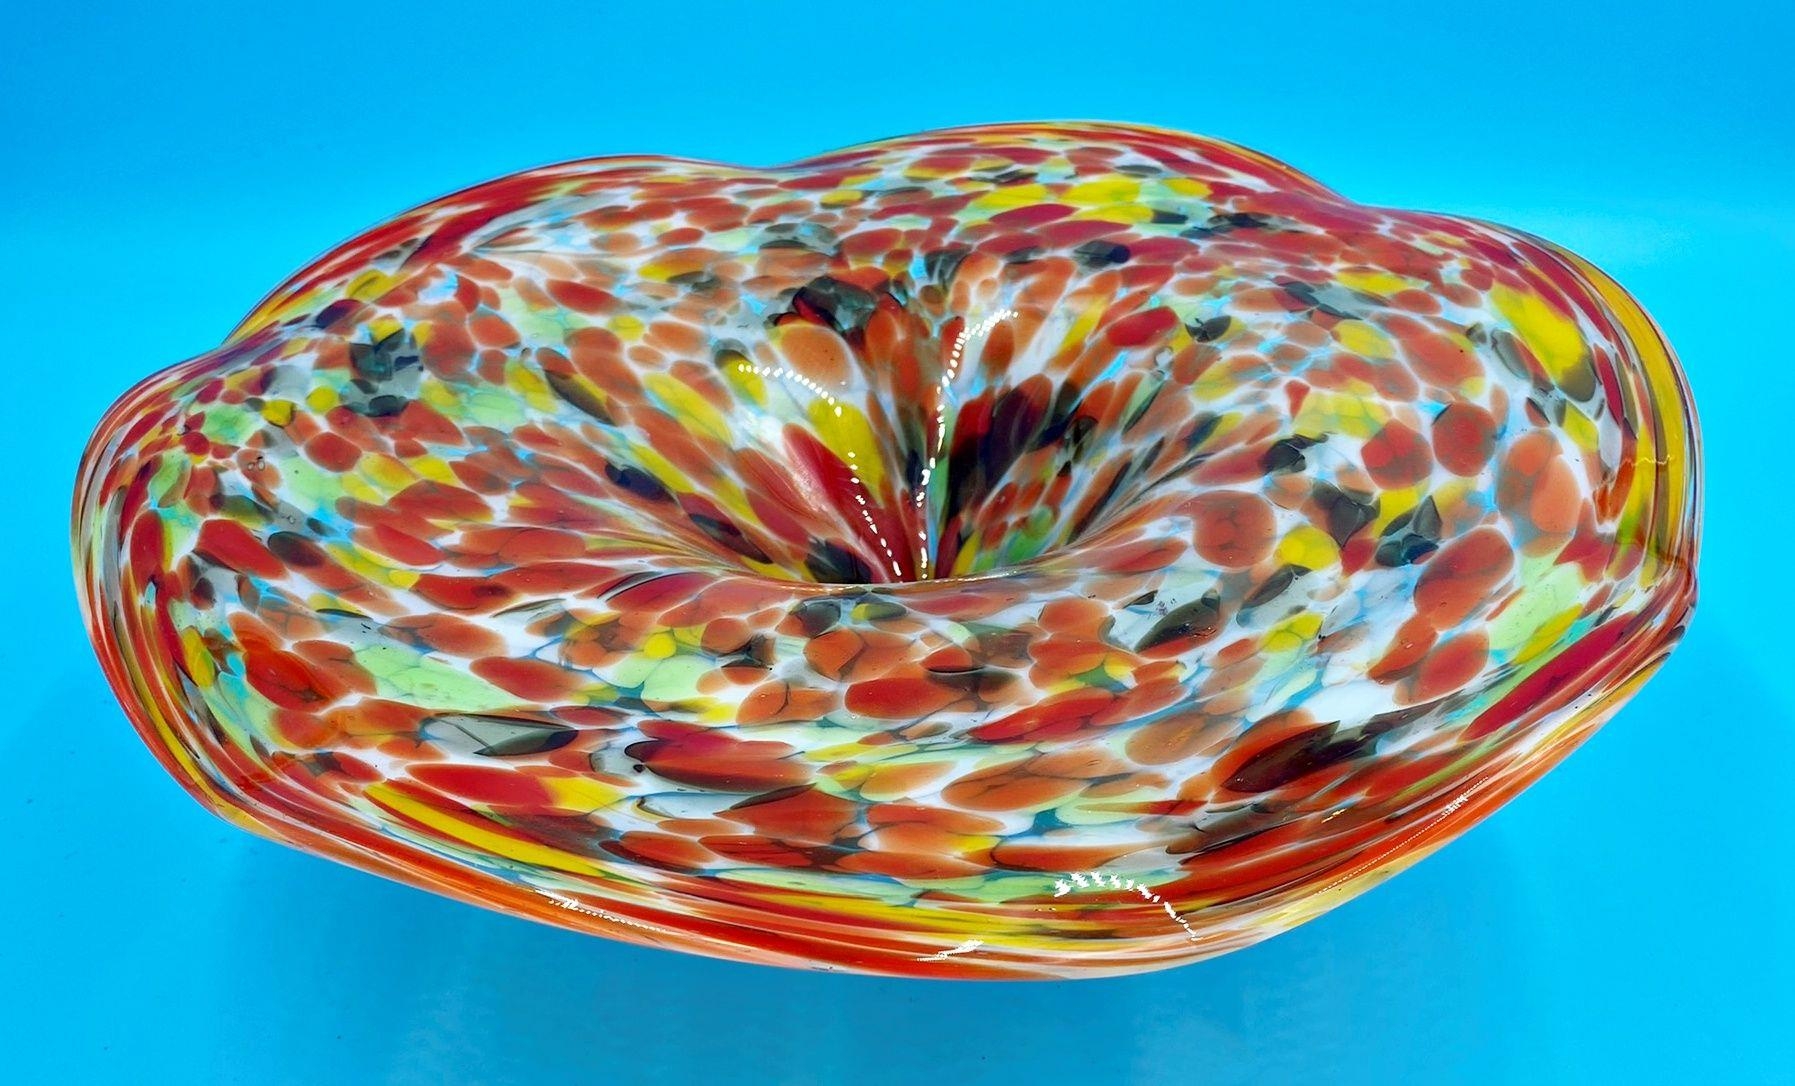 Murano confetti glass centre dish, 12 high x 37 cm diameter - Image 2 of 2